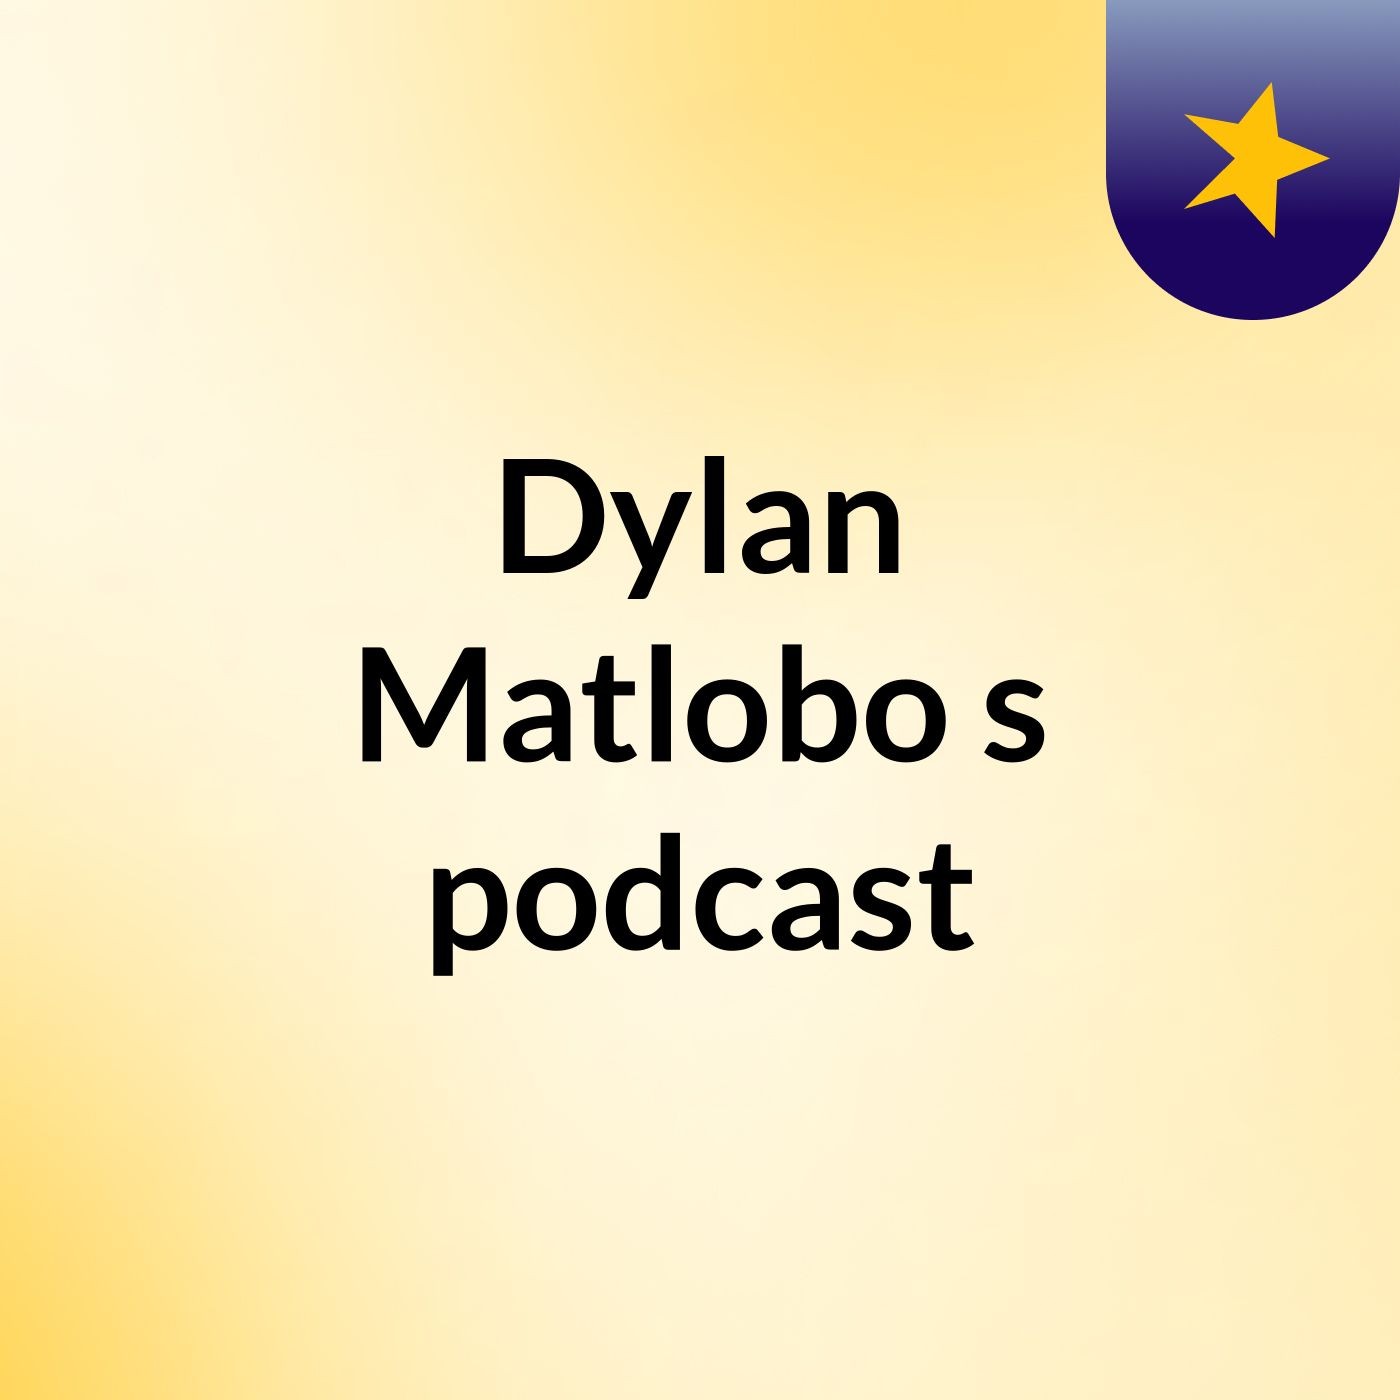 Dylan Matlobo's podcast